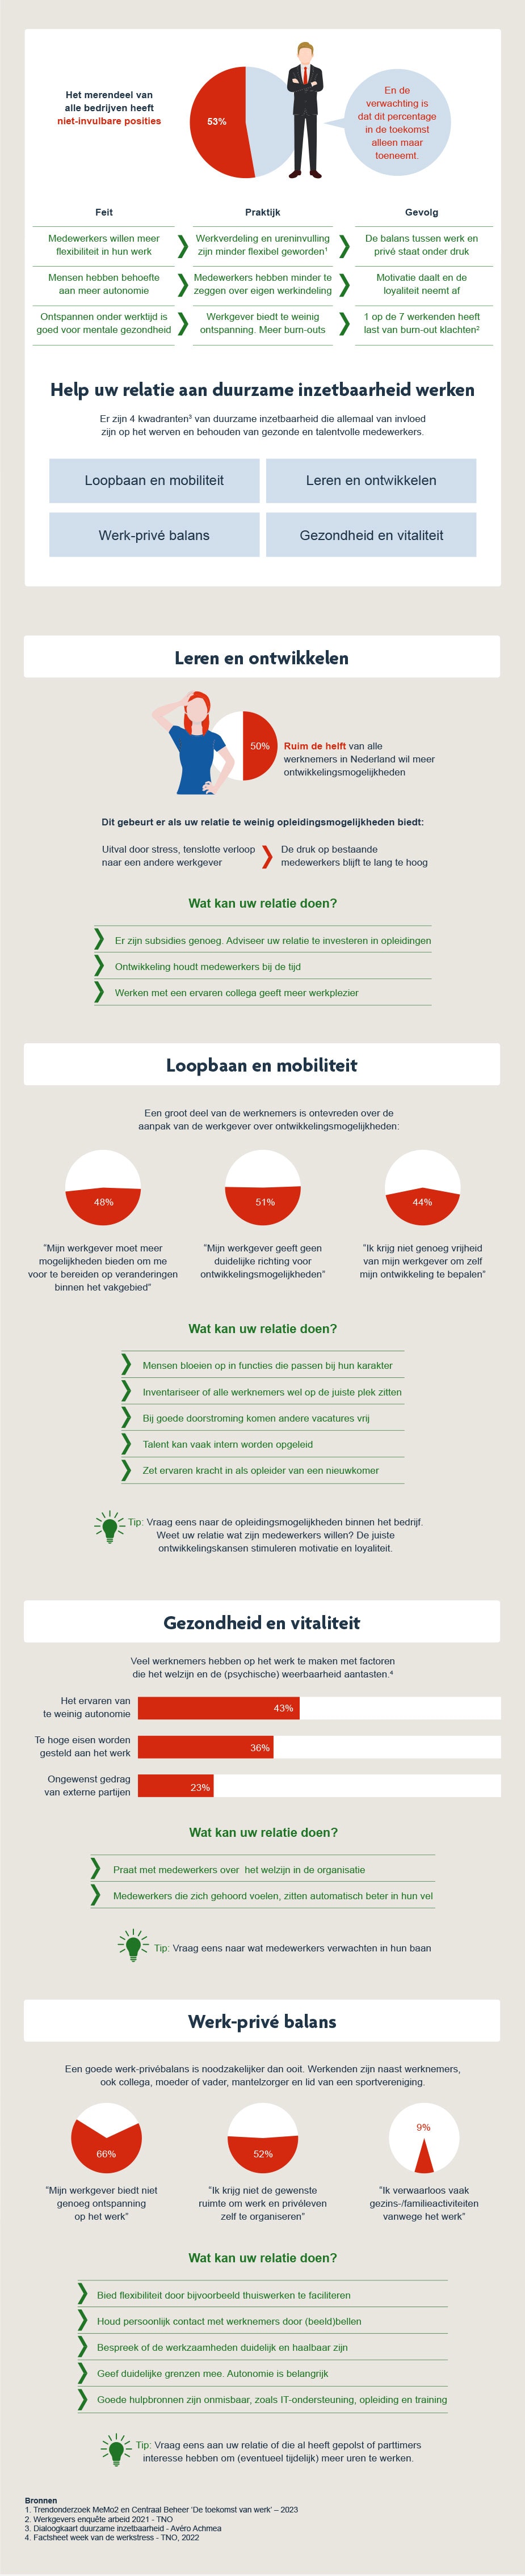 infographic duurzame inzetbaarheid